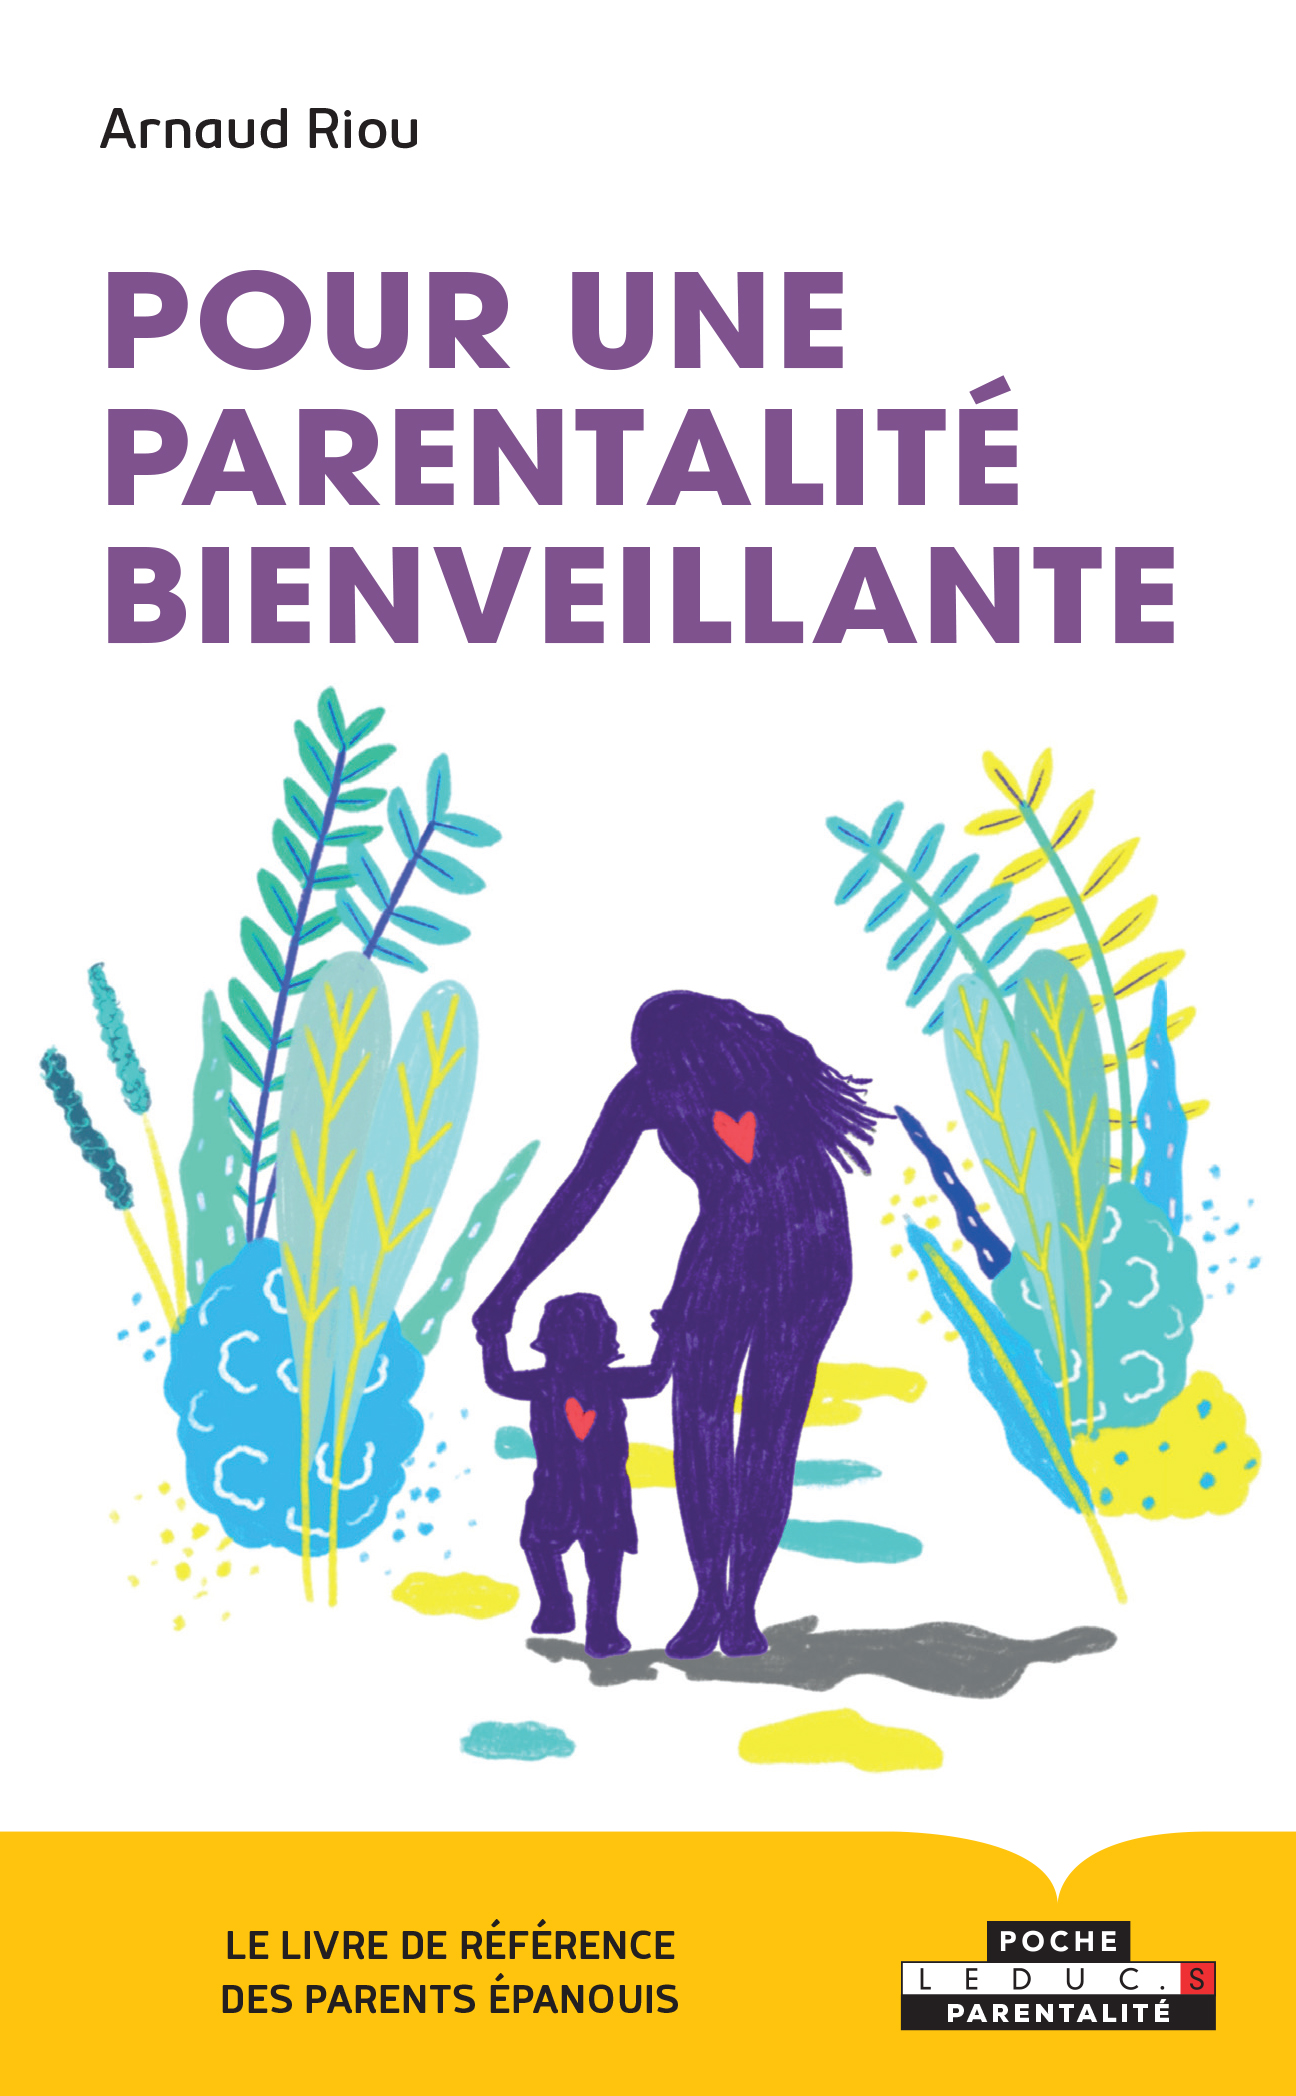 re)devenir le parent que vous avez envie d'être : un atelier parentalité  peut vous aider - S Comm C, le blog